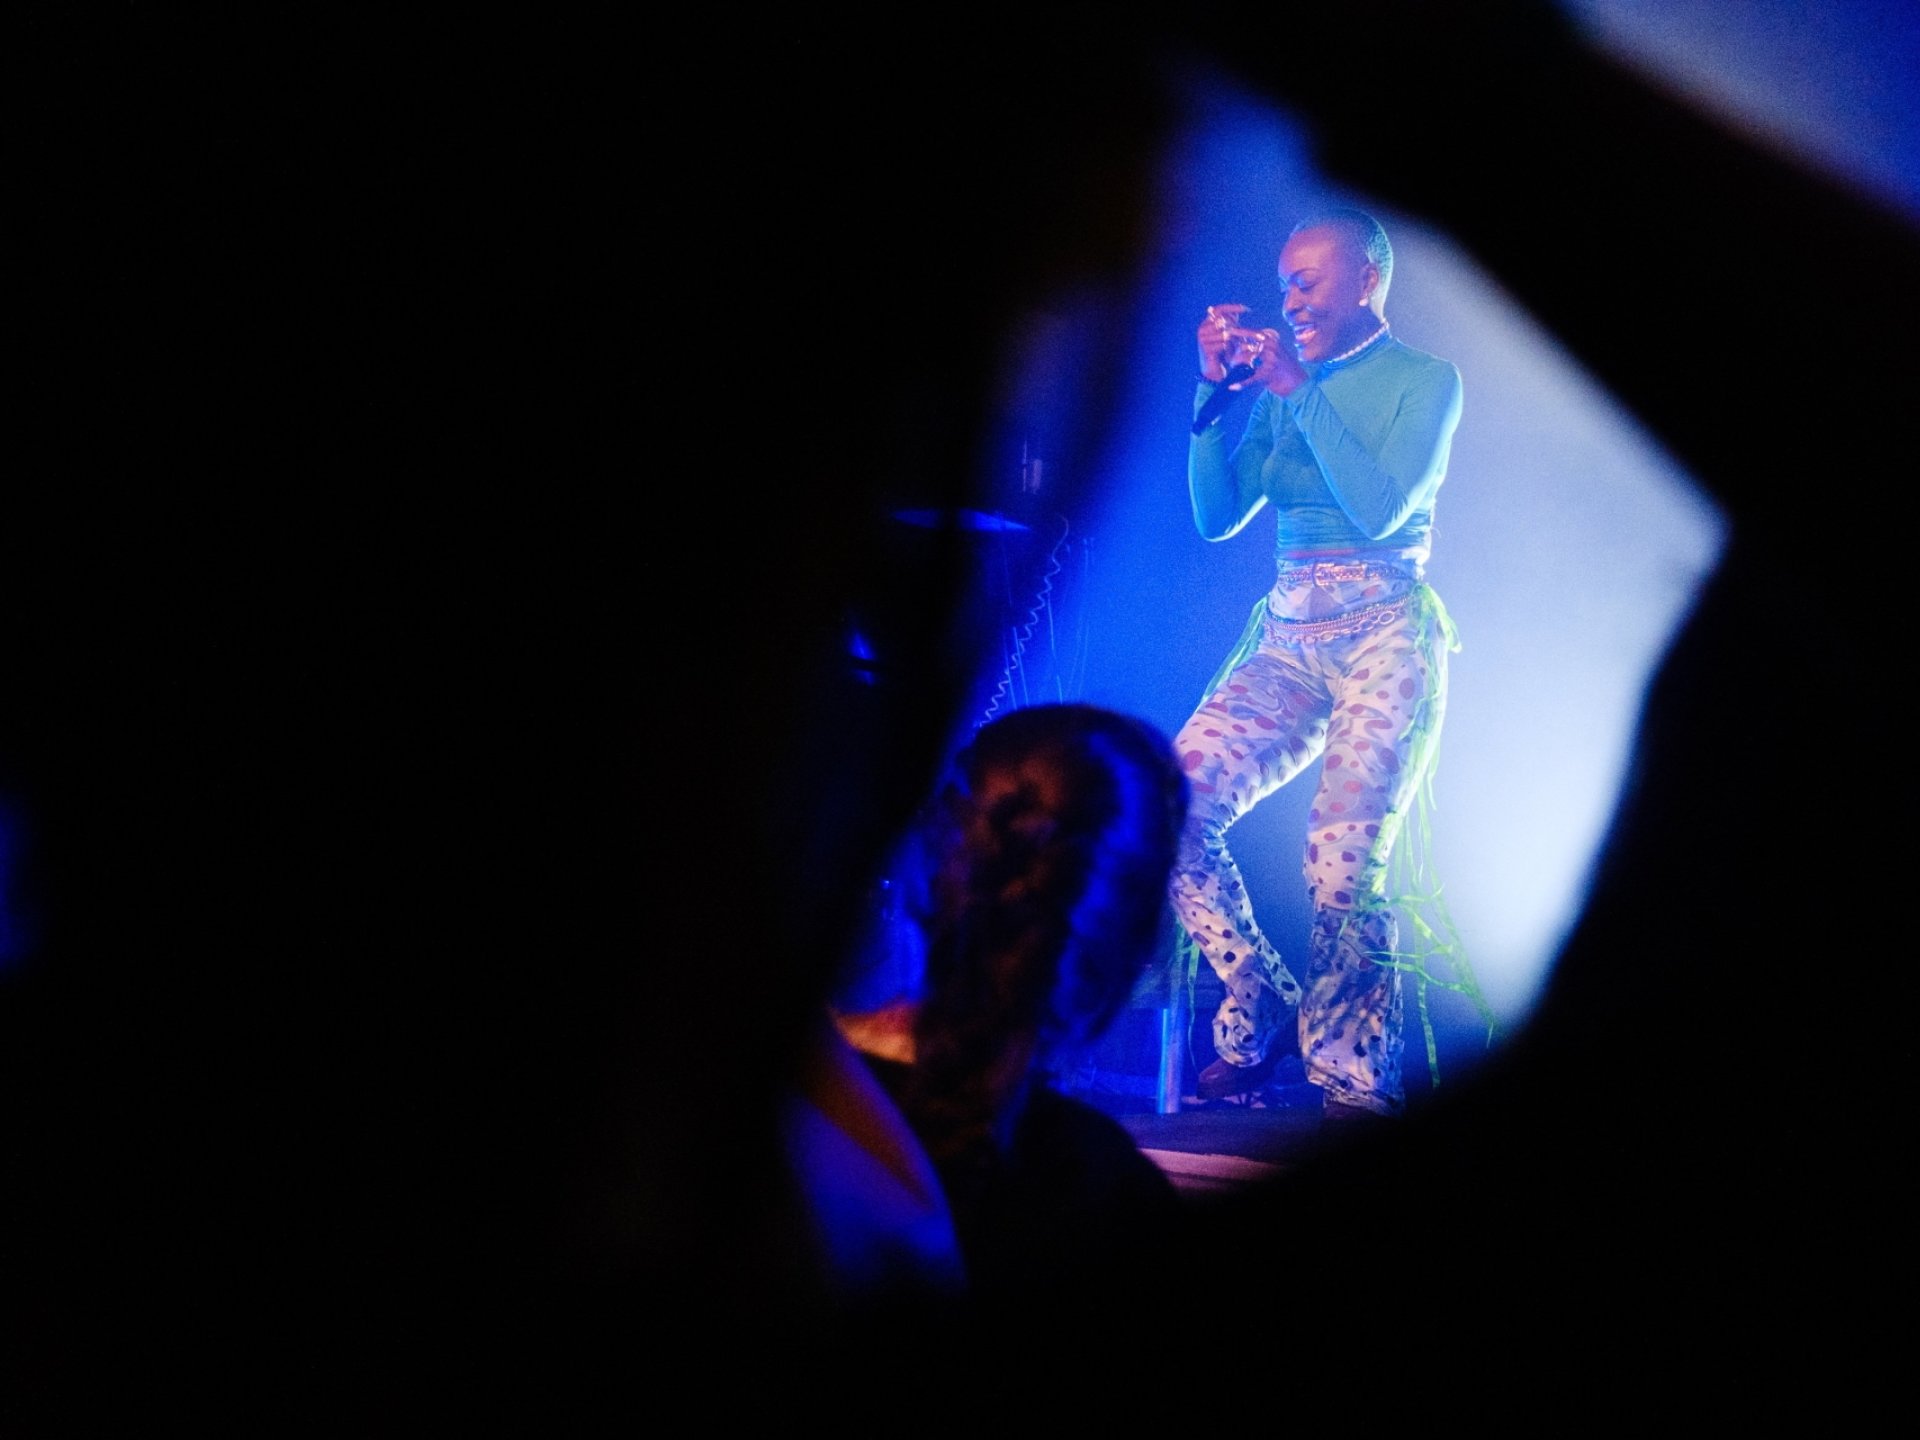 La chanteuse angolaise Pongo a ravi le public avec son énergie communicative, ici à l'Usine à Gaz.